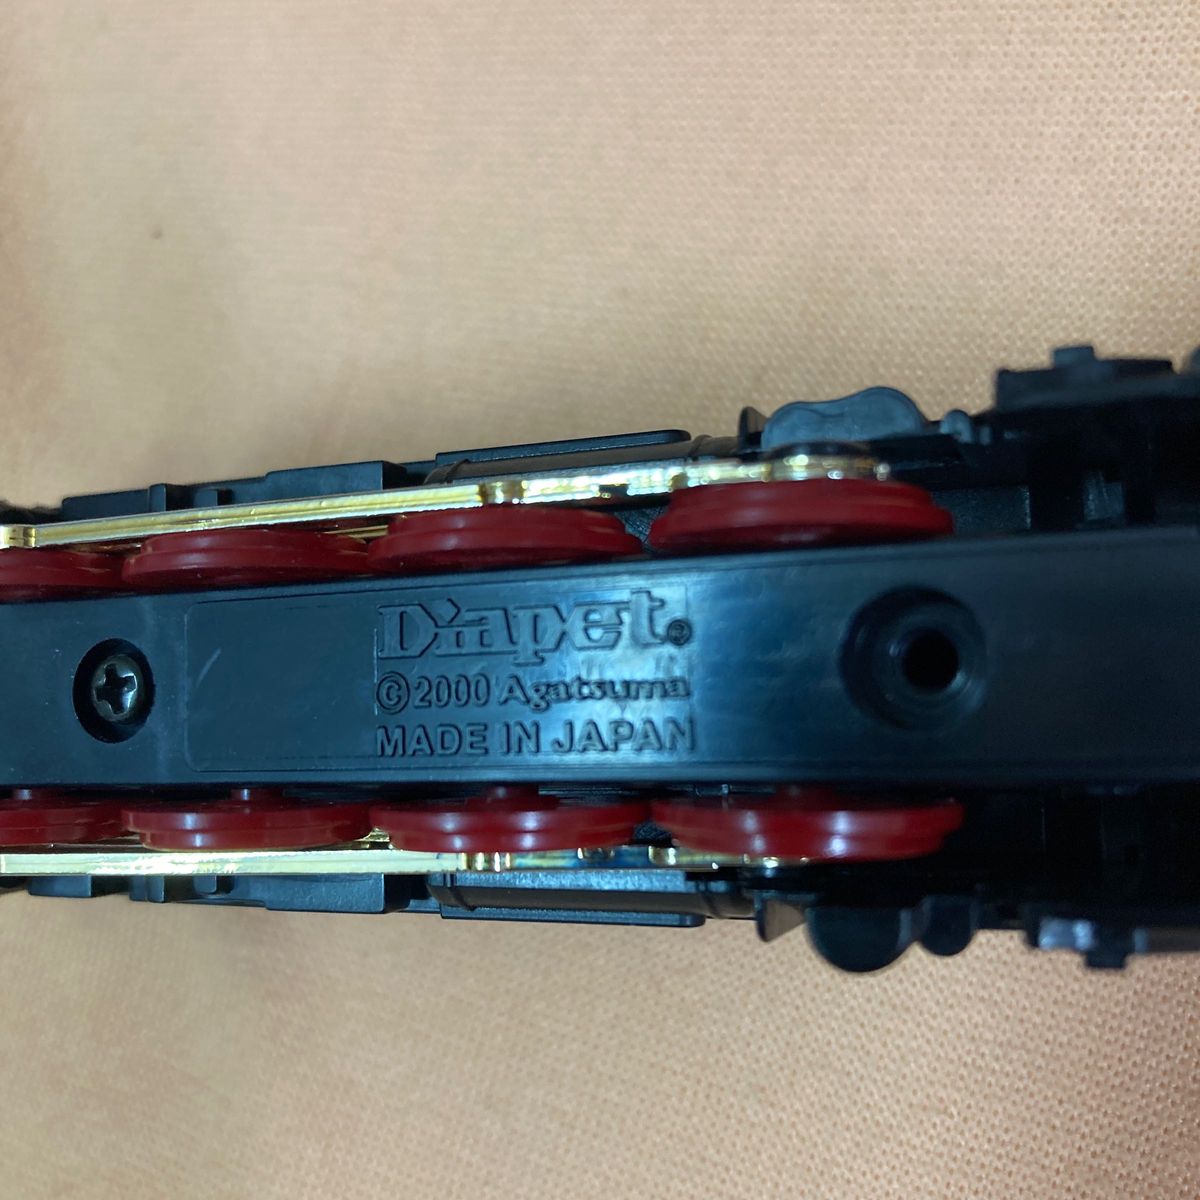 鉄道模型 蒸気機関車 DIAPET D51 agatsuma